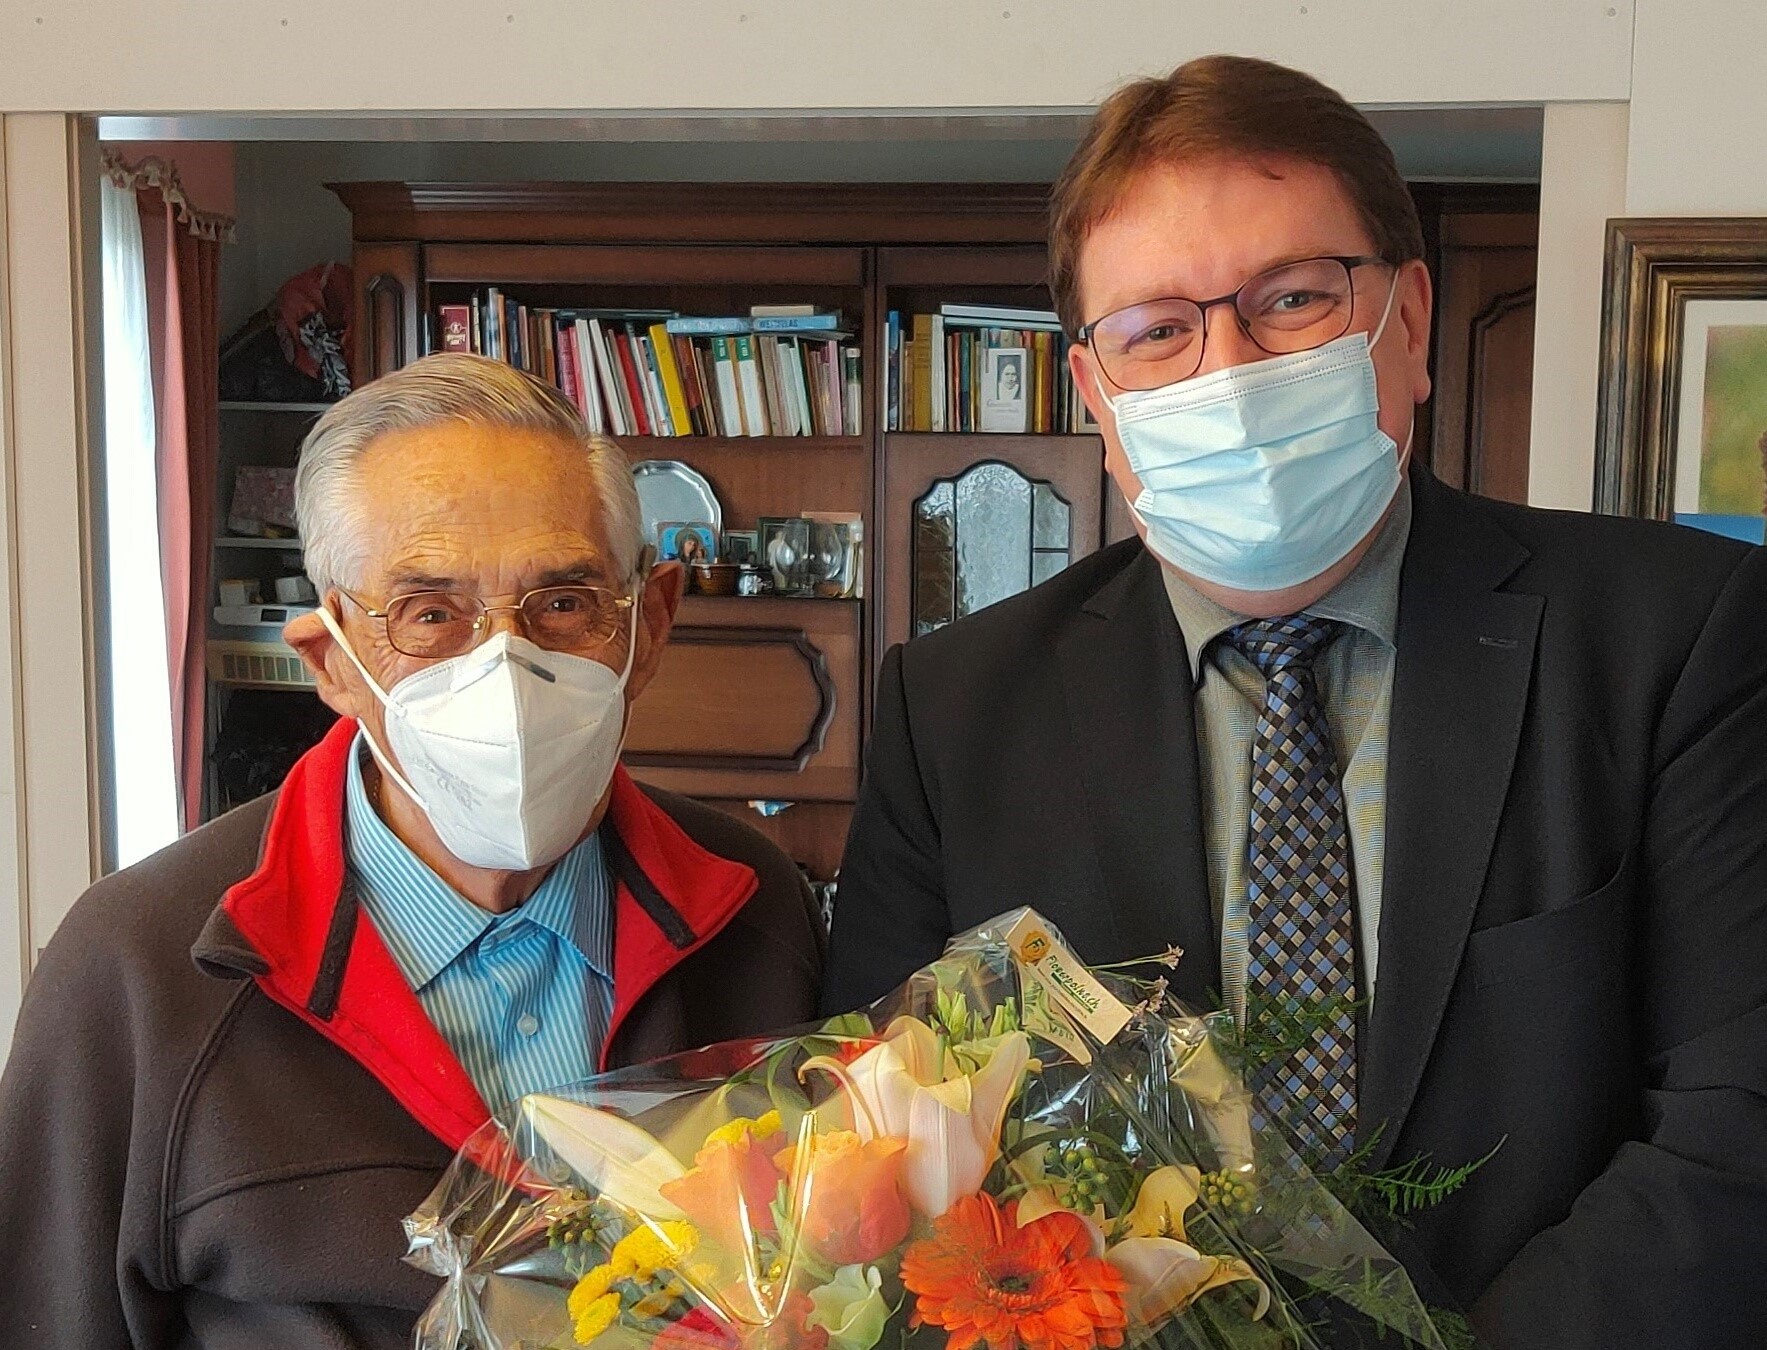 Am Montag, 9. November 2020 feierte Herr Pius Maissen seinen 90. Geburtstag.
In Vertretung der Gemeindebehörden, gratuliert Gemeindepräsident Daniel Bichsel herzlich zum Wiegenfest.